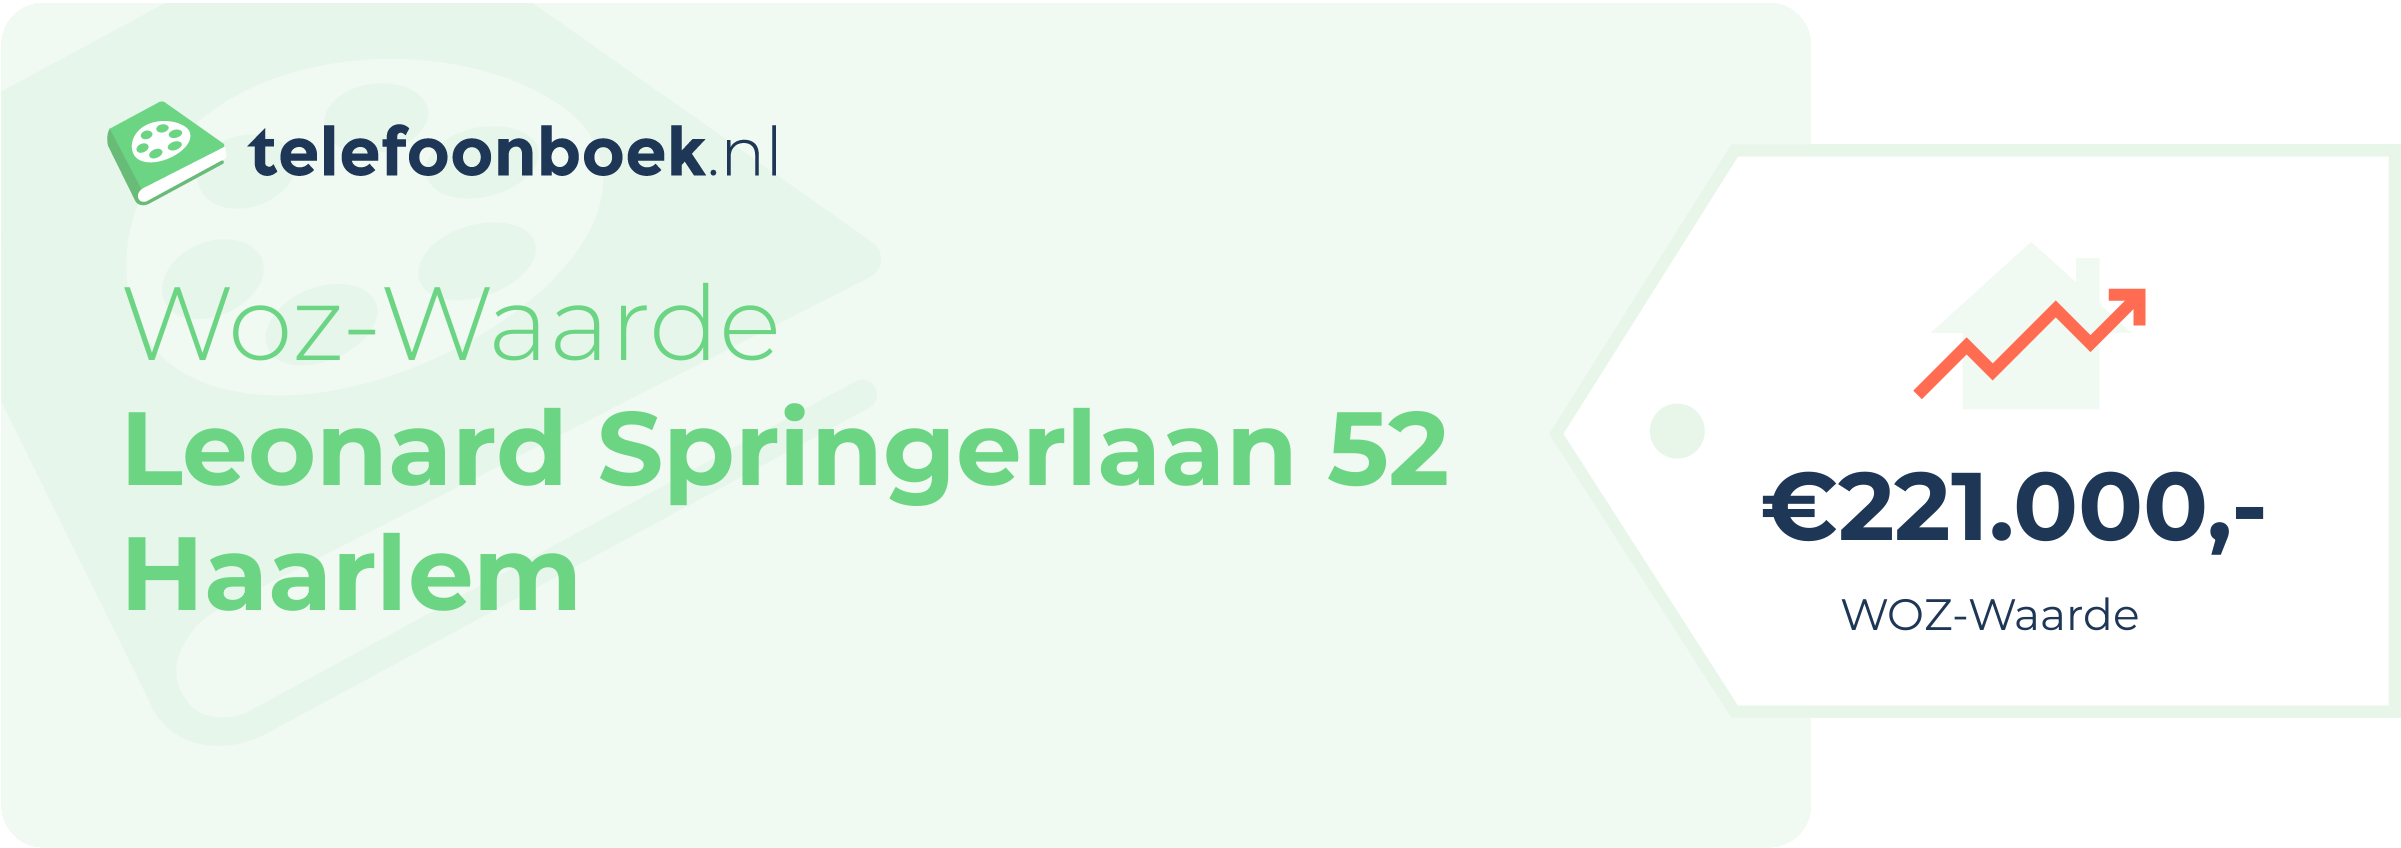 WOZ-waarde Leonard Springerlaan 52 Haarlem